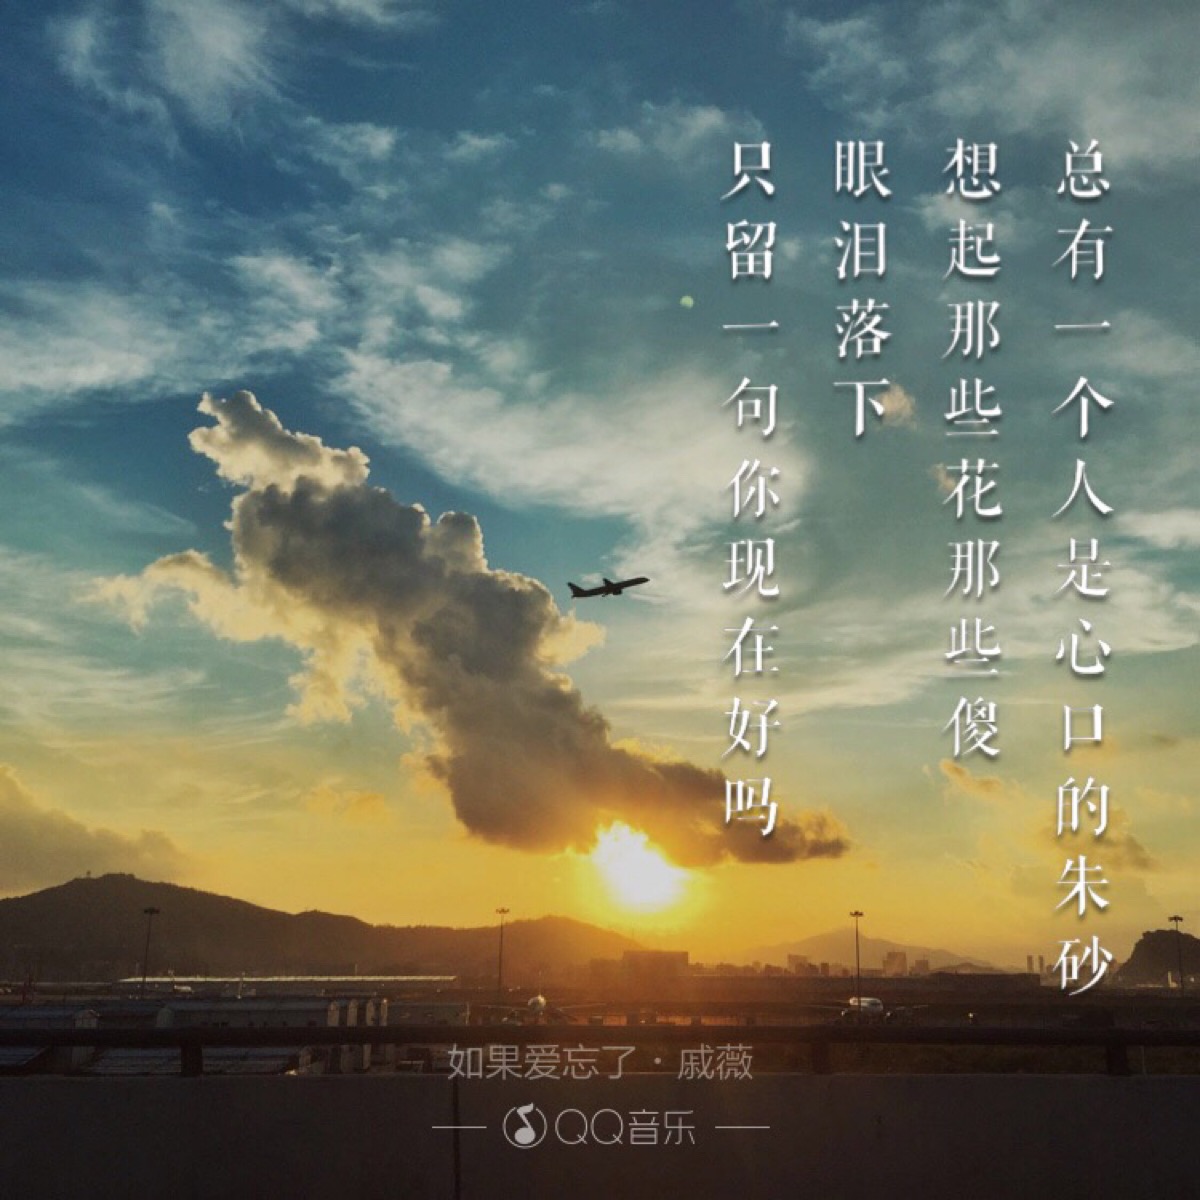 qq音乐歌词海报,原创设计(图片来自网络)【侵删】@谷满尘(部分图片